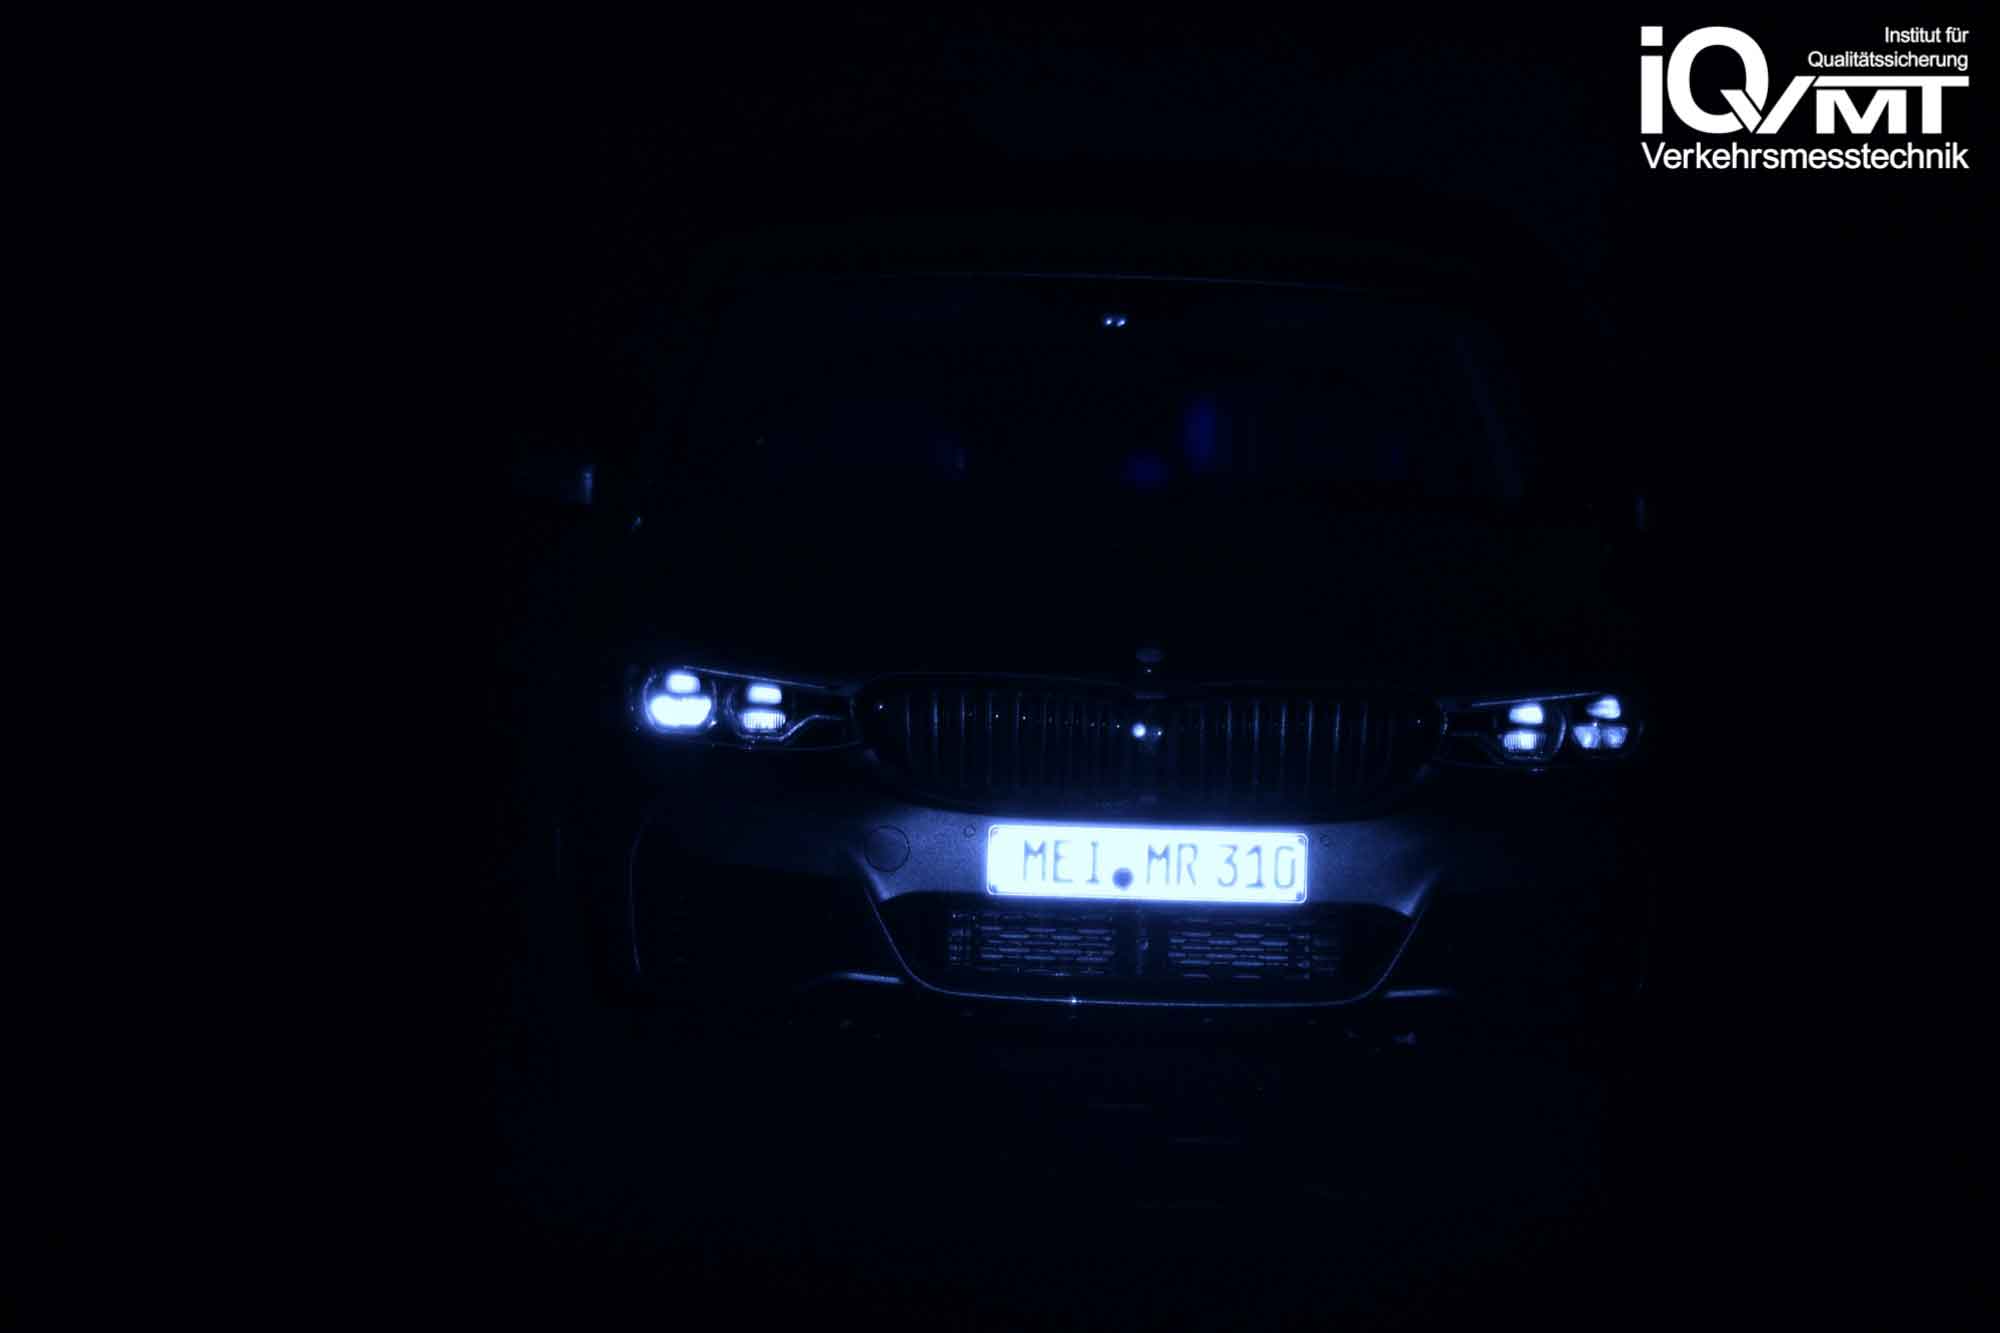 iQvmt - Infrarotfoto zur Refektivität der messrelevanten IR-Laserstrahlung am  BMW 6